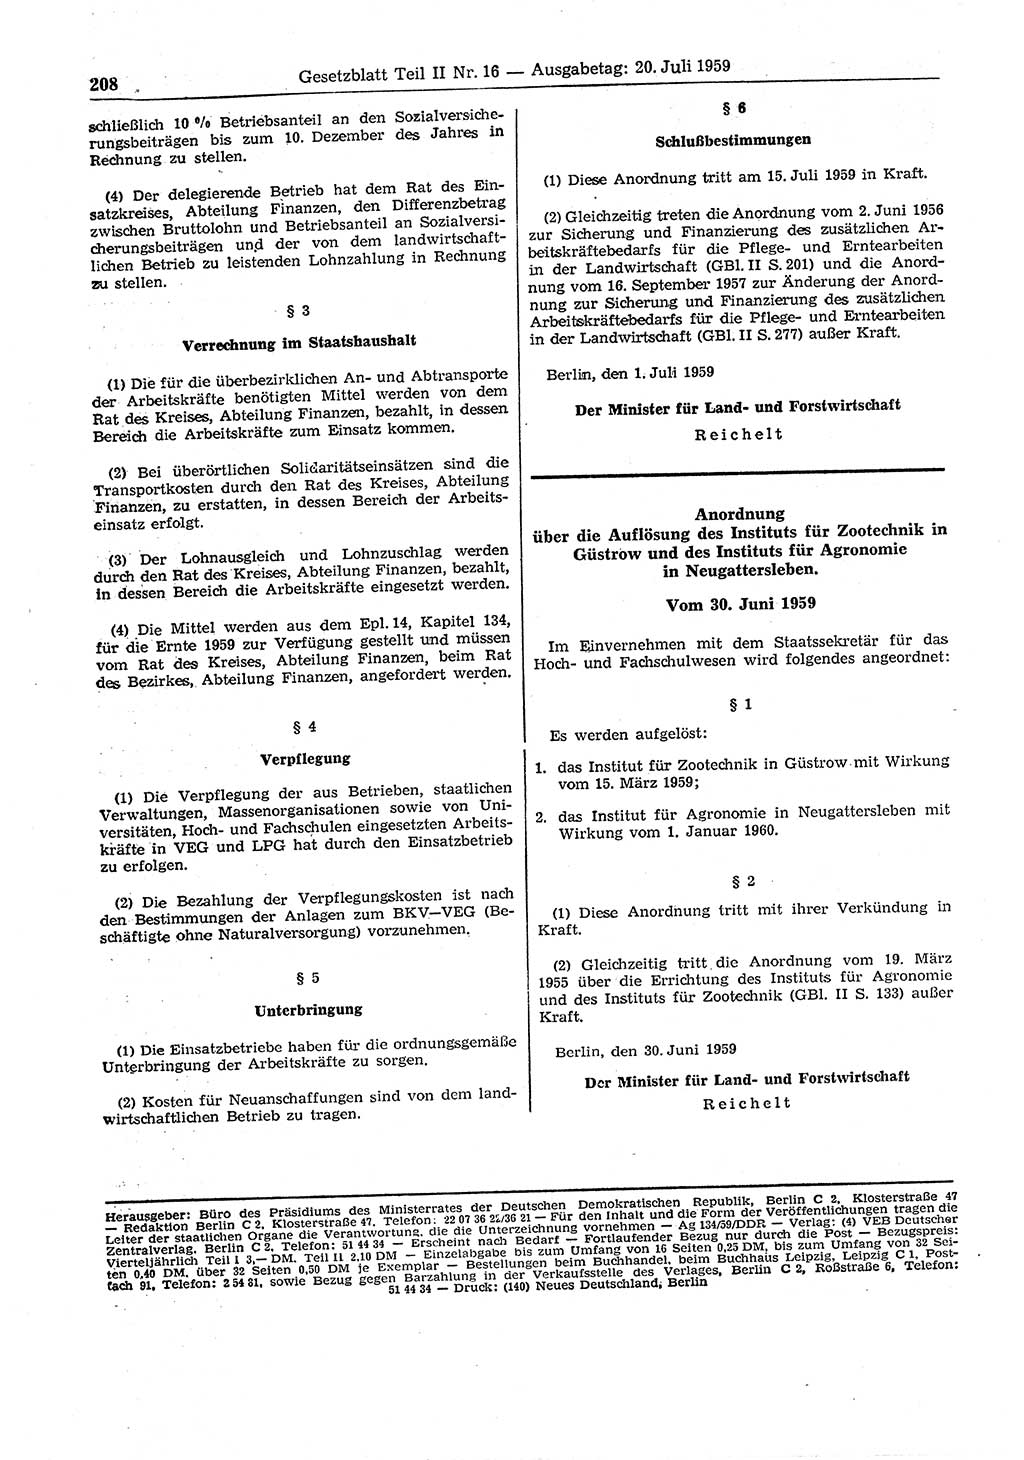 Gesetzblatt (GBl.) der Deutschen Demokratischen Republik (DDR) Teil ⅠⅠ 1959, Seite 208 (GBl. DDR ⅠⅠ 1959, S. 208)